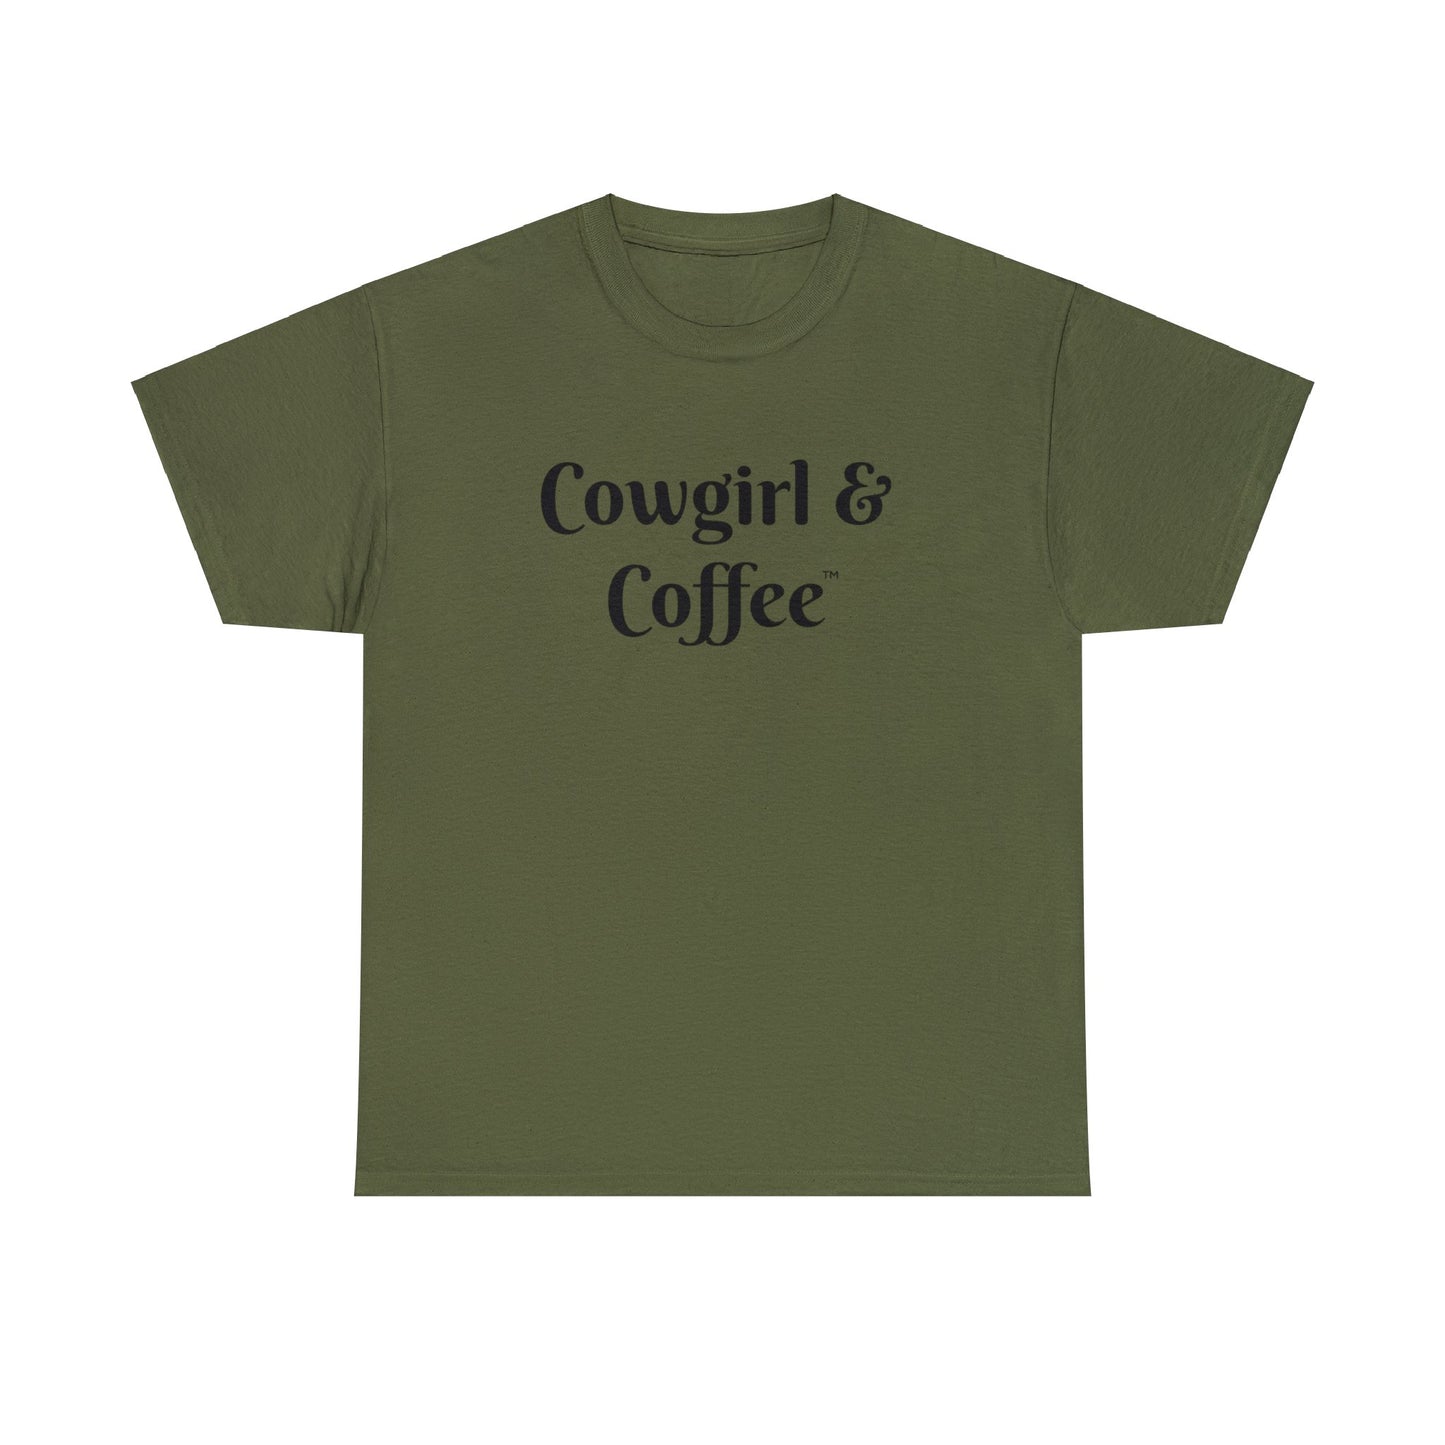 Bargain Tee "Cowgirl & Coffee"